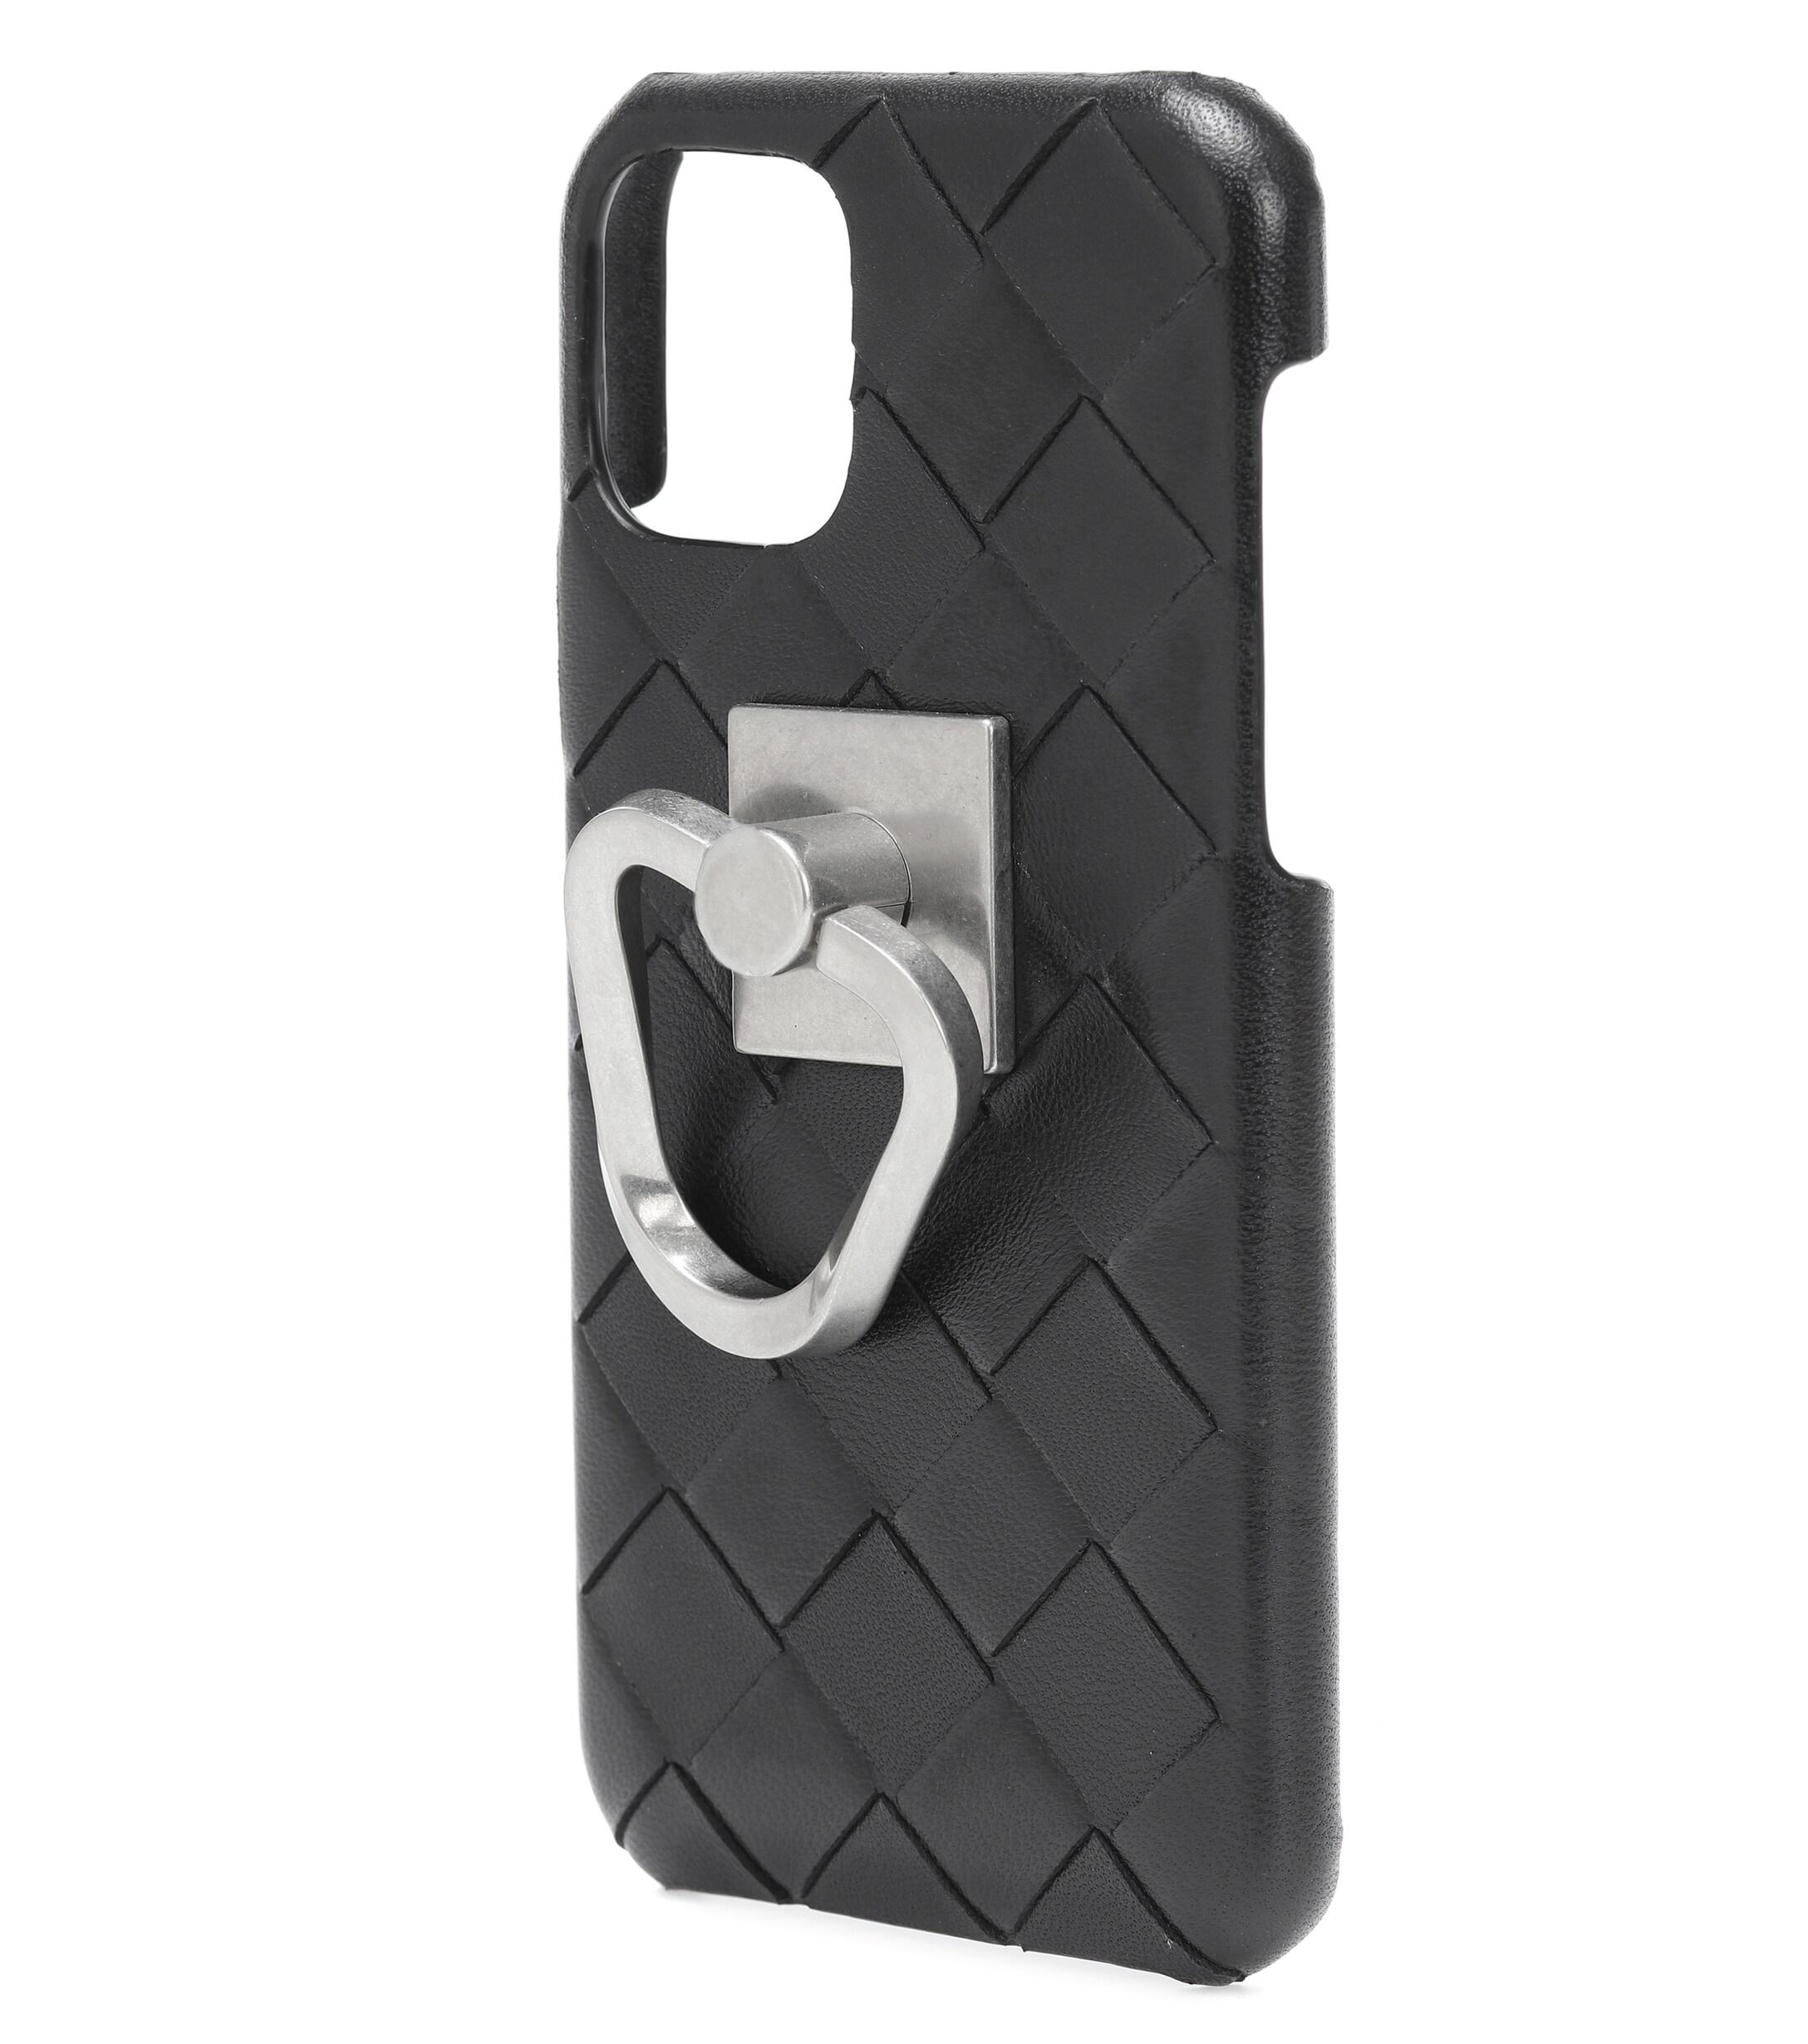 Bottega Veneta Intrecciato Leather Iphone 11 Pro Case in Black - Lyst